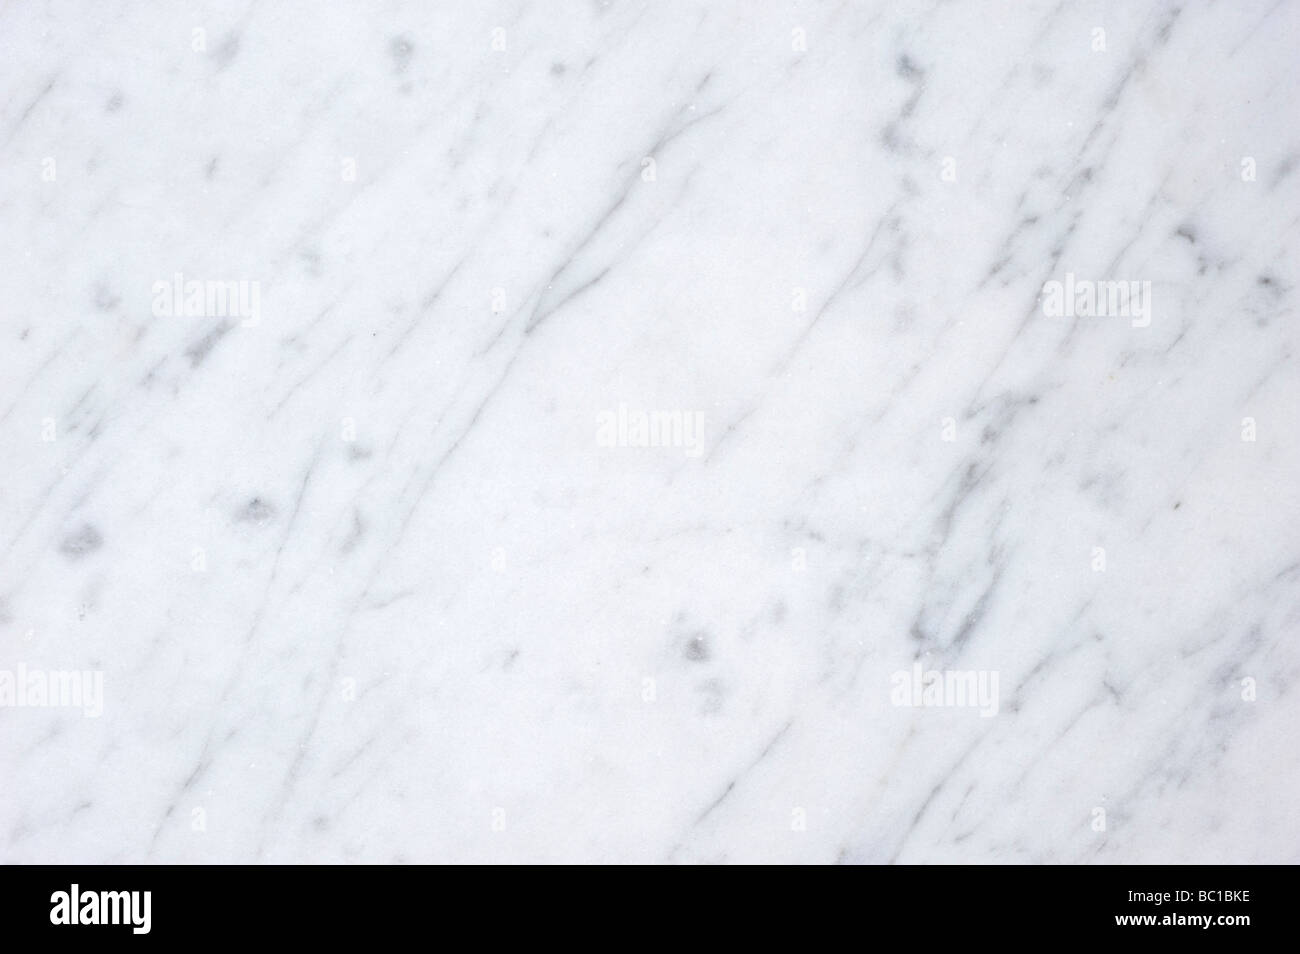 eine enge, der echte Carrara-Marmor, Carrara, Toskana, Italien, Europa, bitte siehe Beschreibung für weitere Details zu diesem Bild Stockfoto